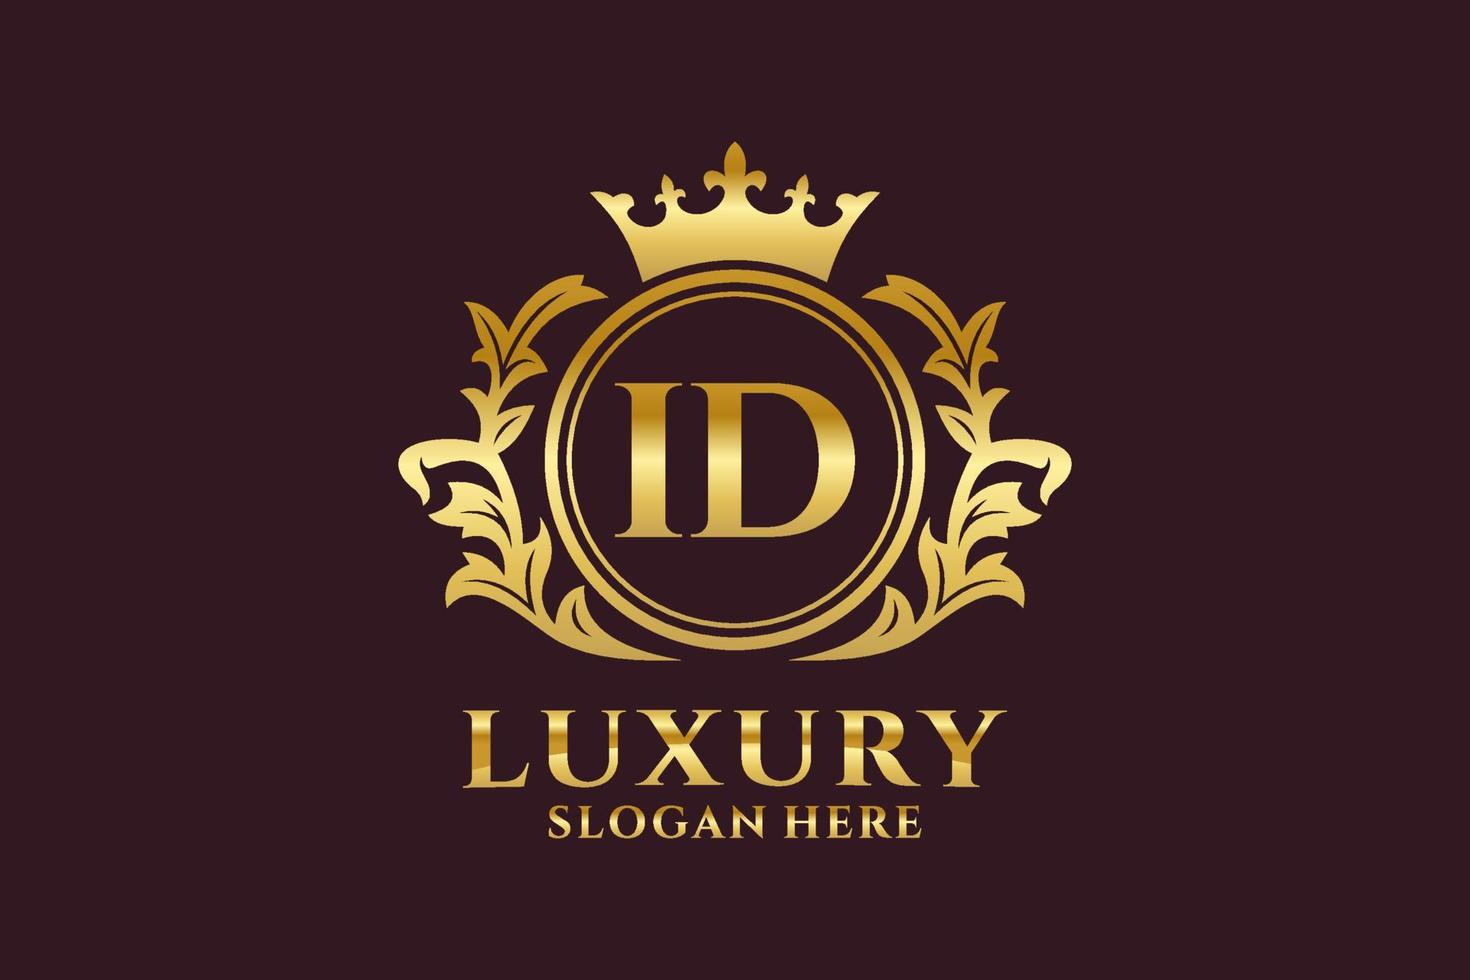 Anfangs-ID-Buchstabe königliche Luxus-Logo-Vorlage in Vektorgrafiken für luxuriöse Branding-Projekte und andere Vektorillustrationen. vektor